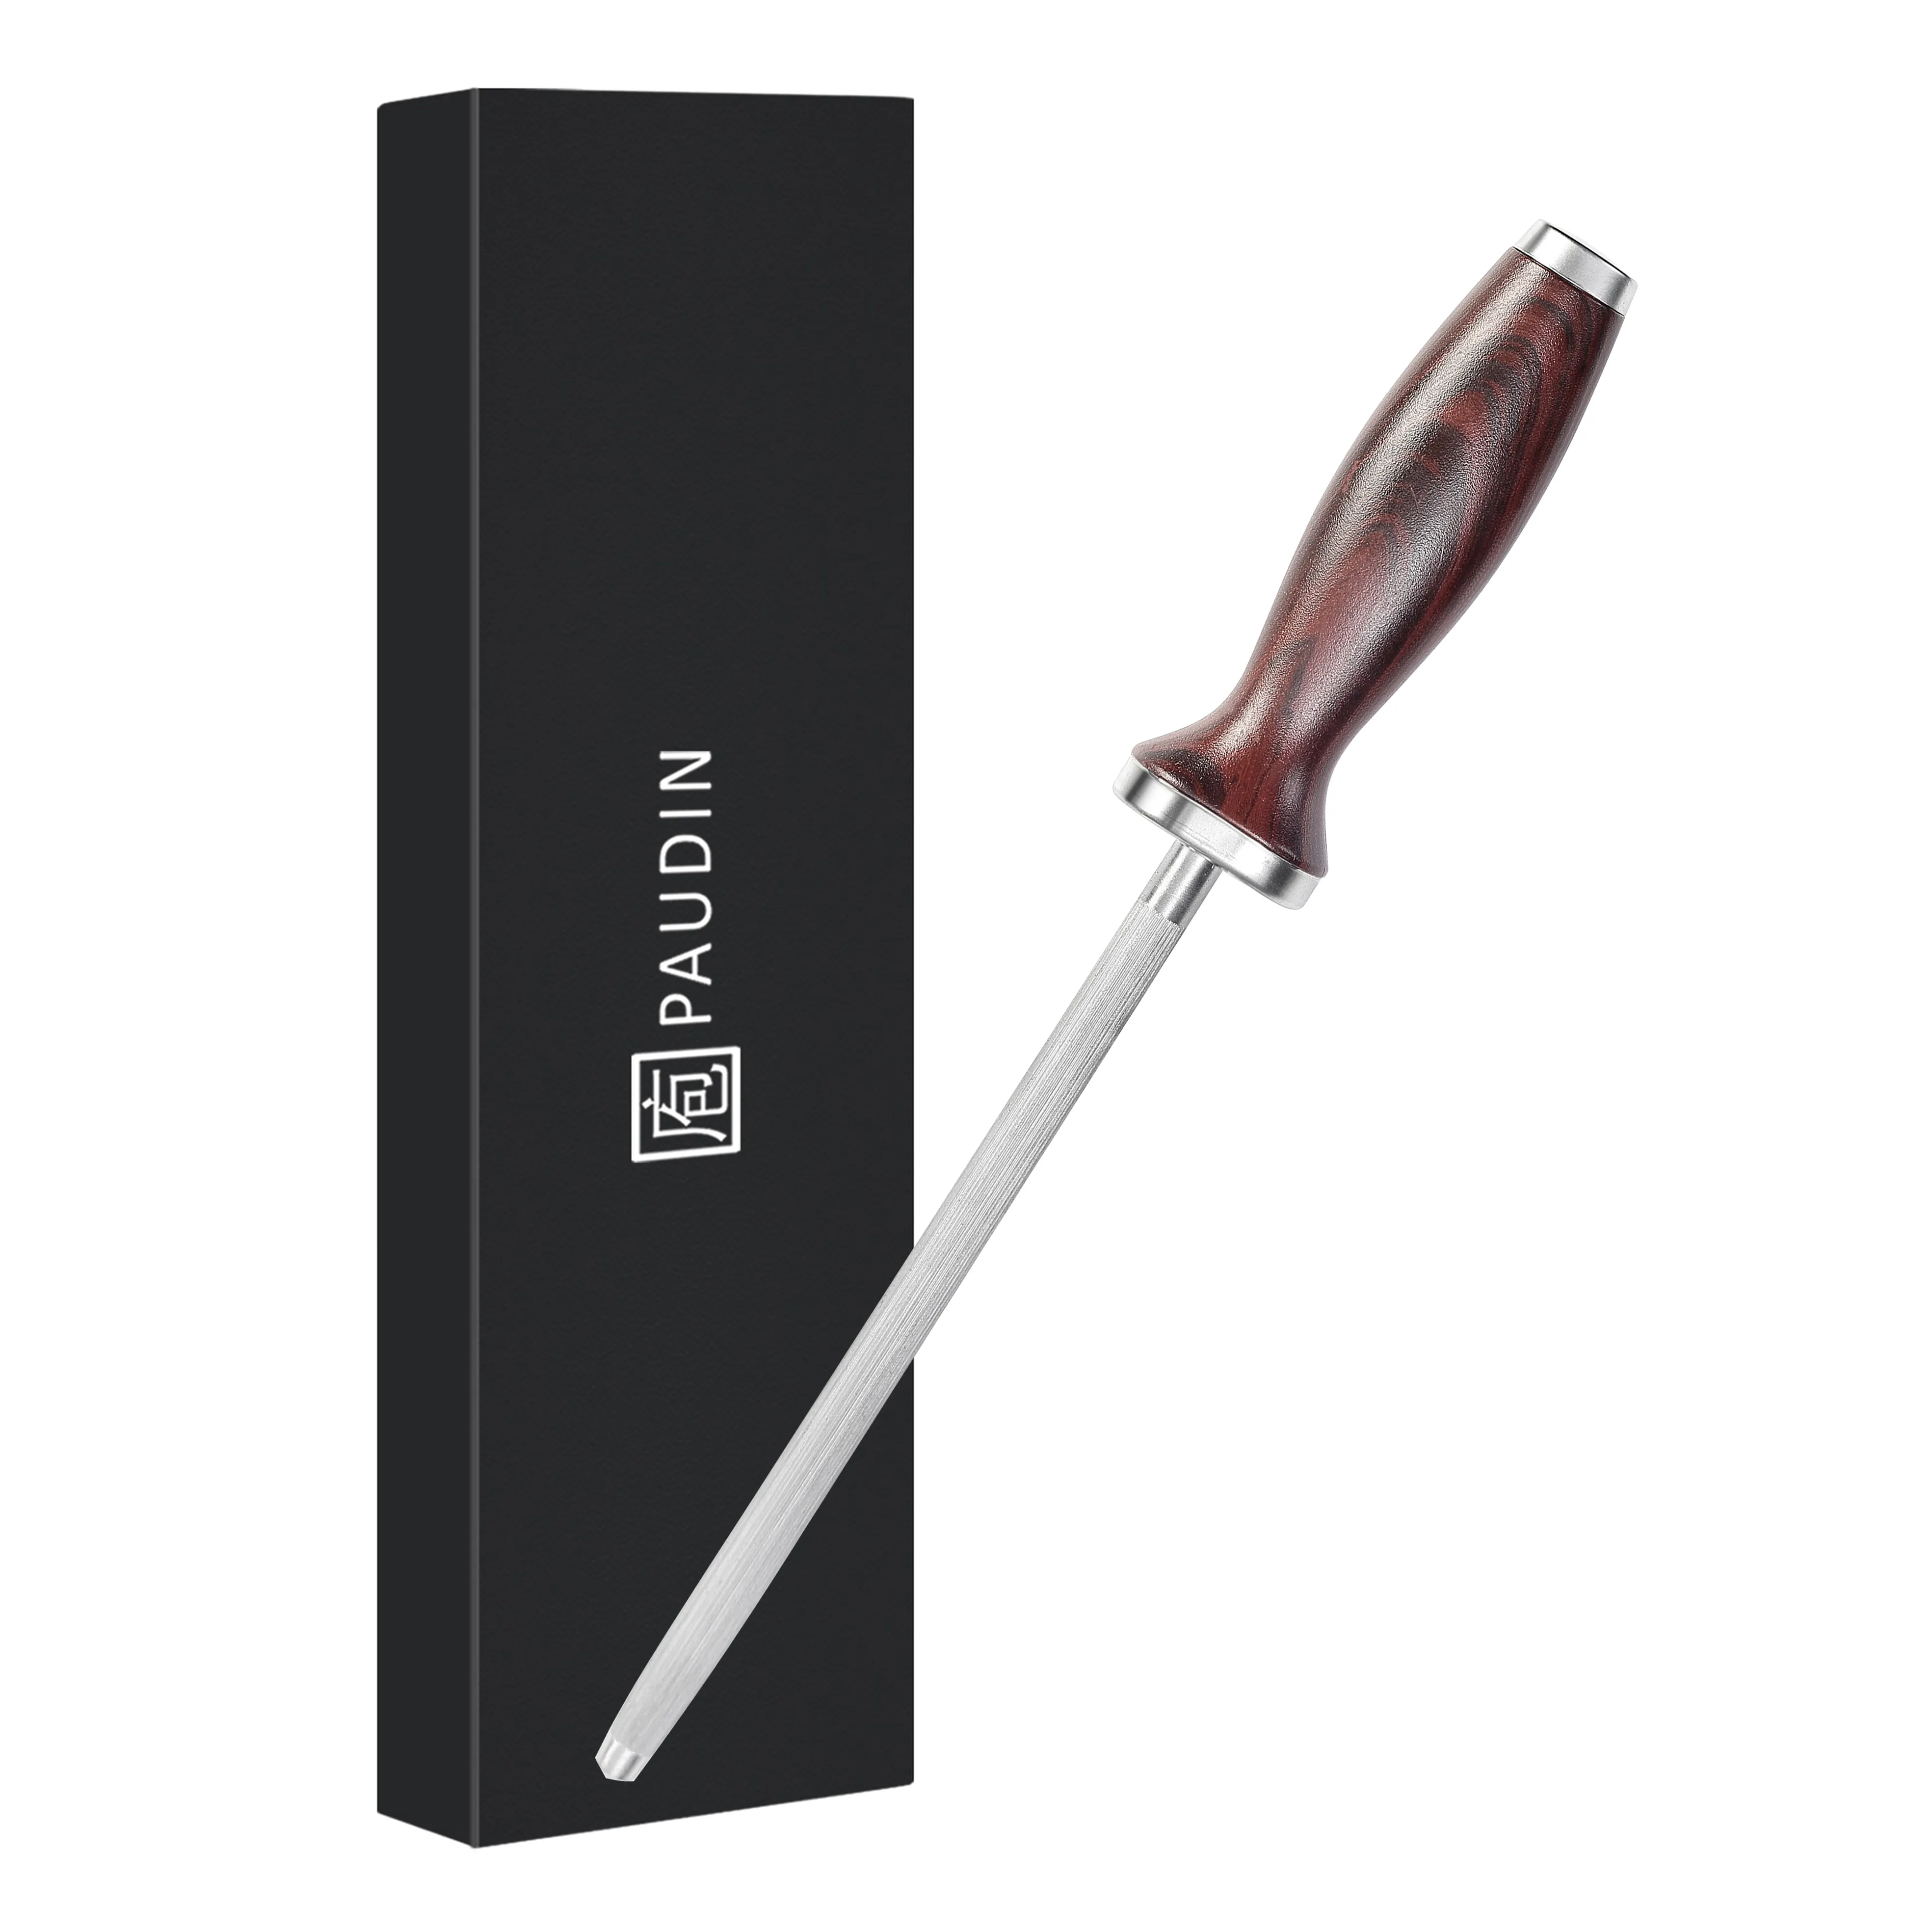 NH1 OEM 8 pollici di alta qualità in acciaio inox affilatrice coltelli da cucina con rivestimento in legno ABS Pakka manico coltello affilatura asta